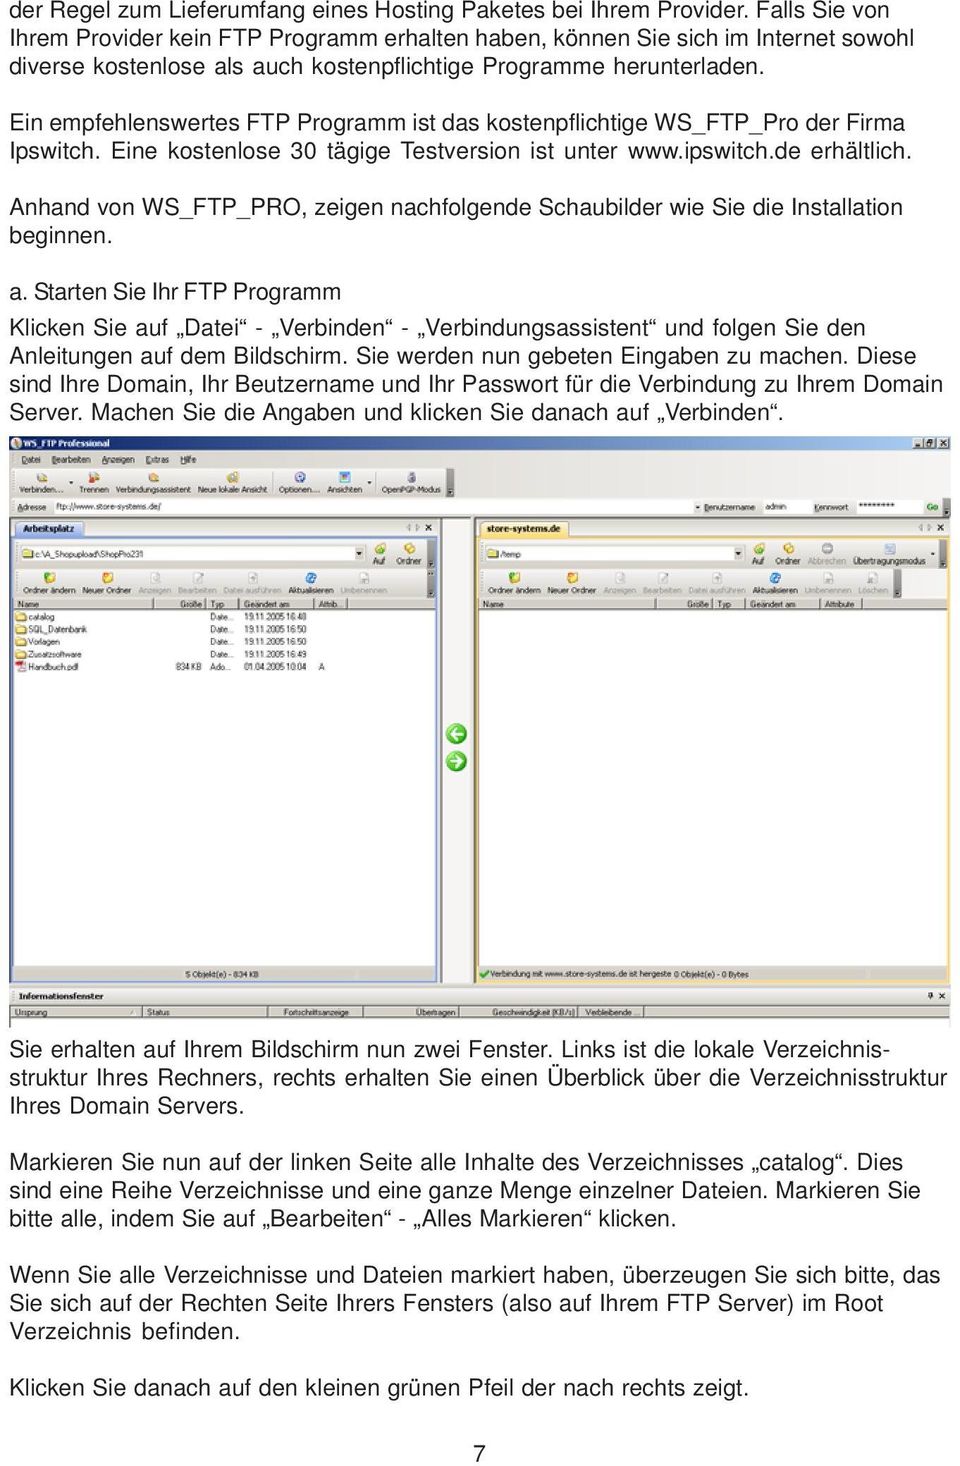 Ein empfehlenswertes FTP Programm ist das kostenpflichtige WS_FTP_Pro der Firma Ipswitch. Eine kostenlose 30 tägige Testversion ist unter www.ipswitch.de erhältlich.